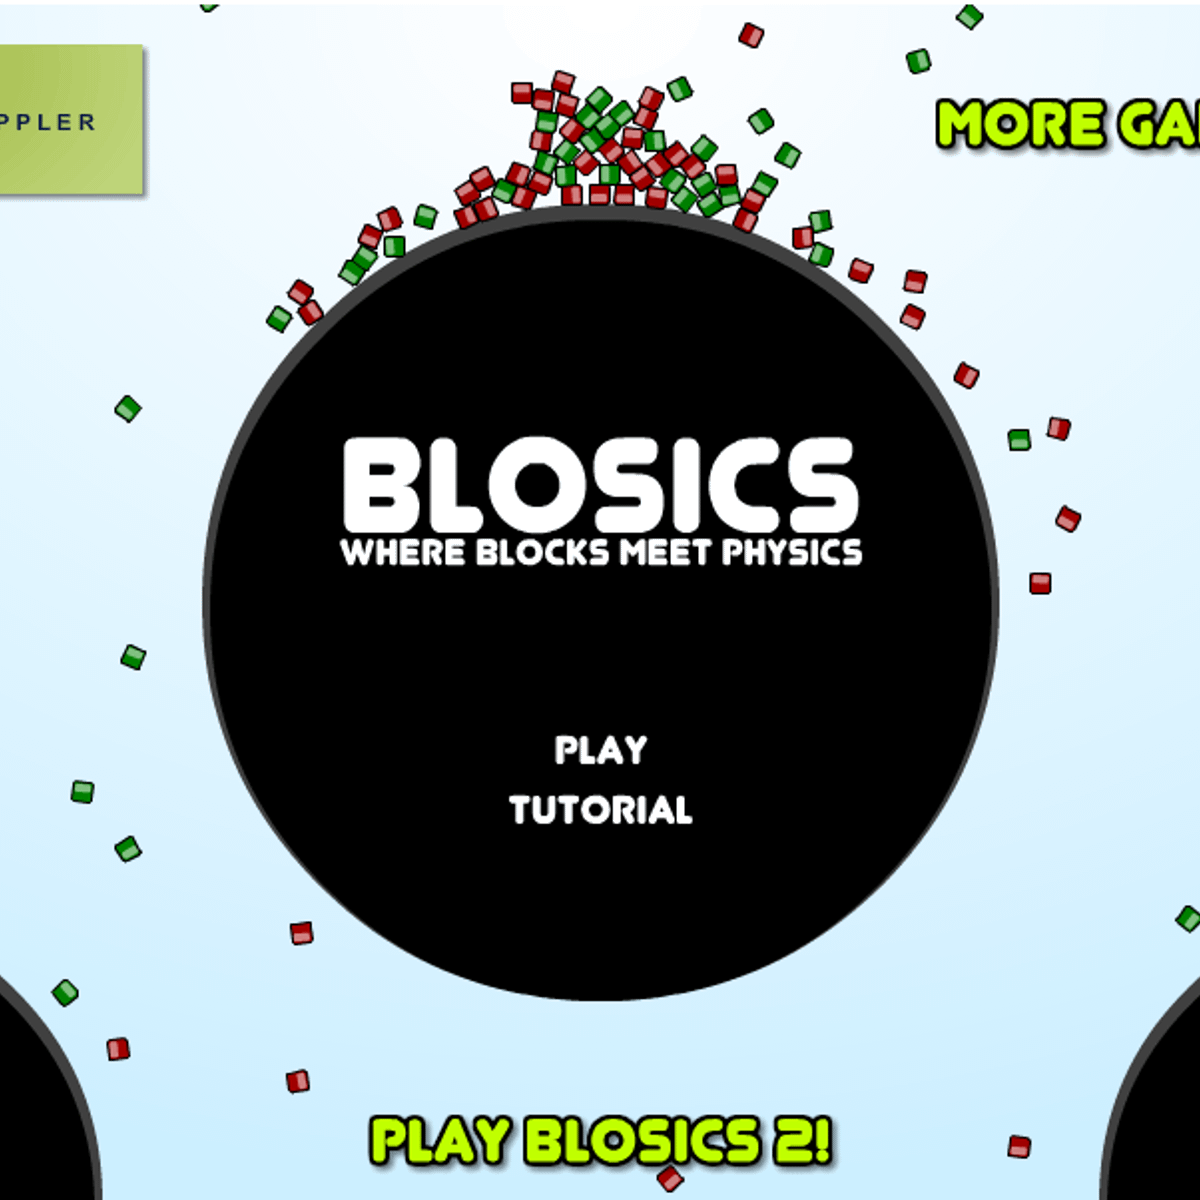 blosics-alternatives-and-similar-games-alternativeto